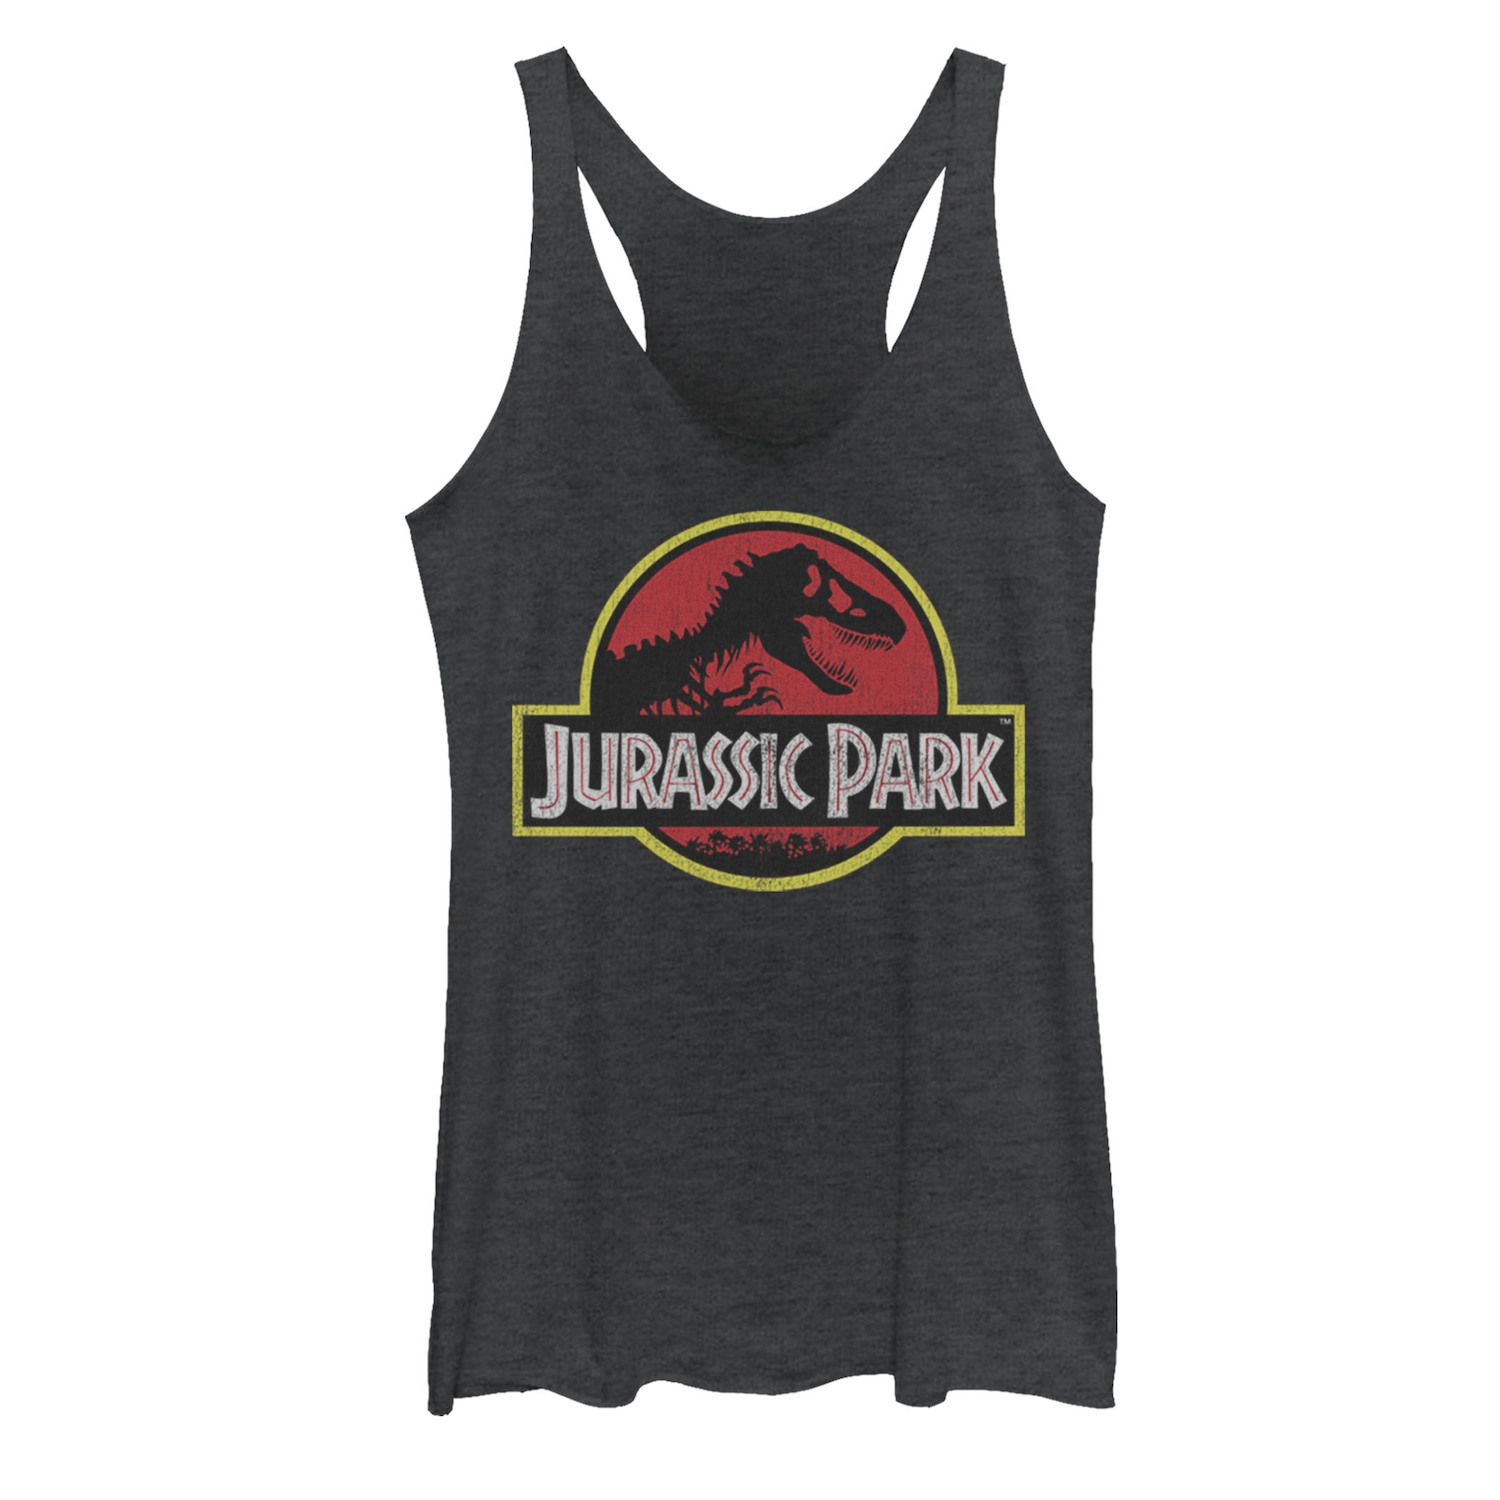 Юниорская майка с логотипом Jurassic Park J Licensed Character